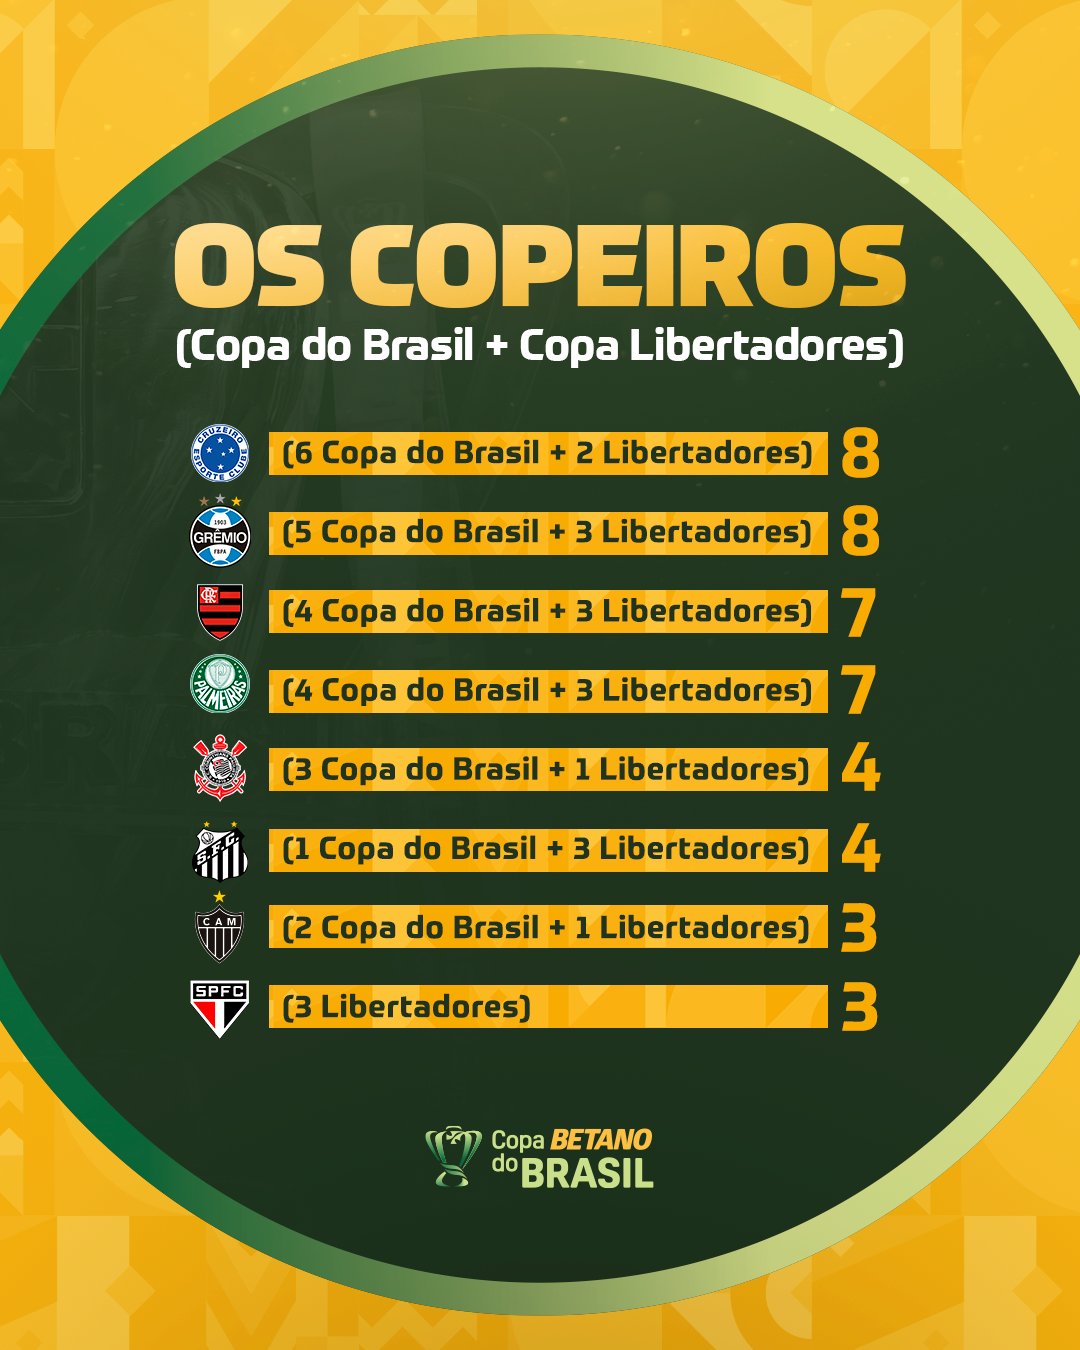 Copa do Brasil (@CopaDoBrasilCBF) / X